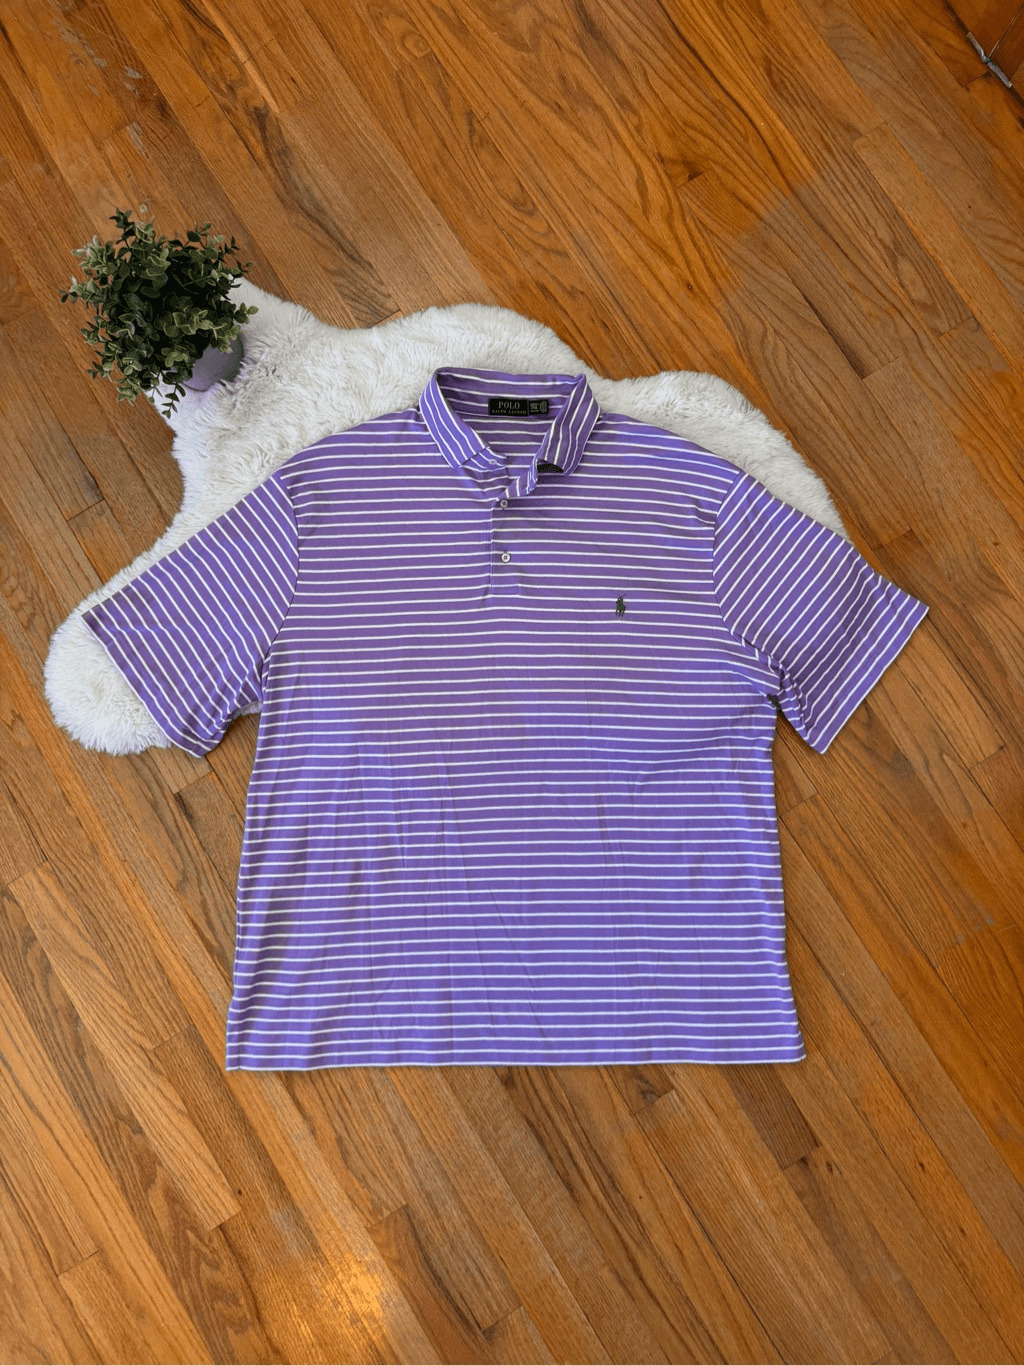 Polo Ralph Lauren Striped Purple Polo Size 2XLT - image 1